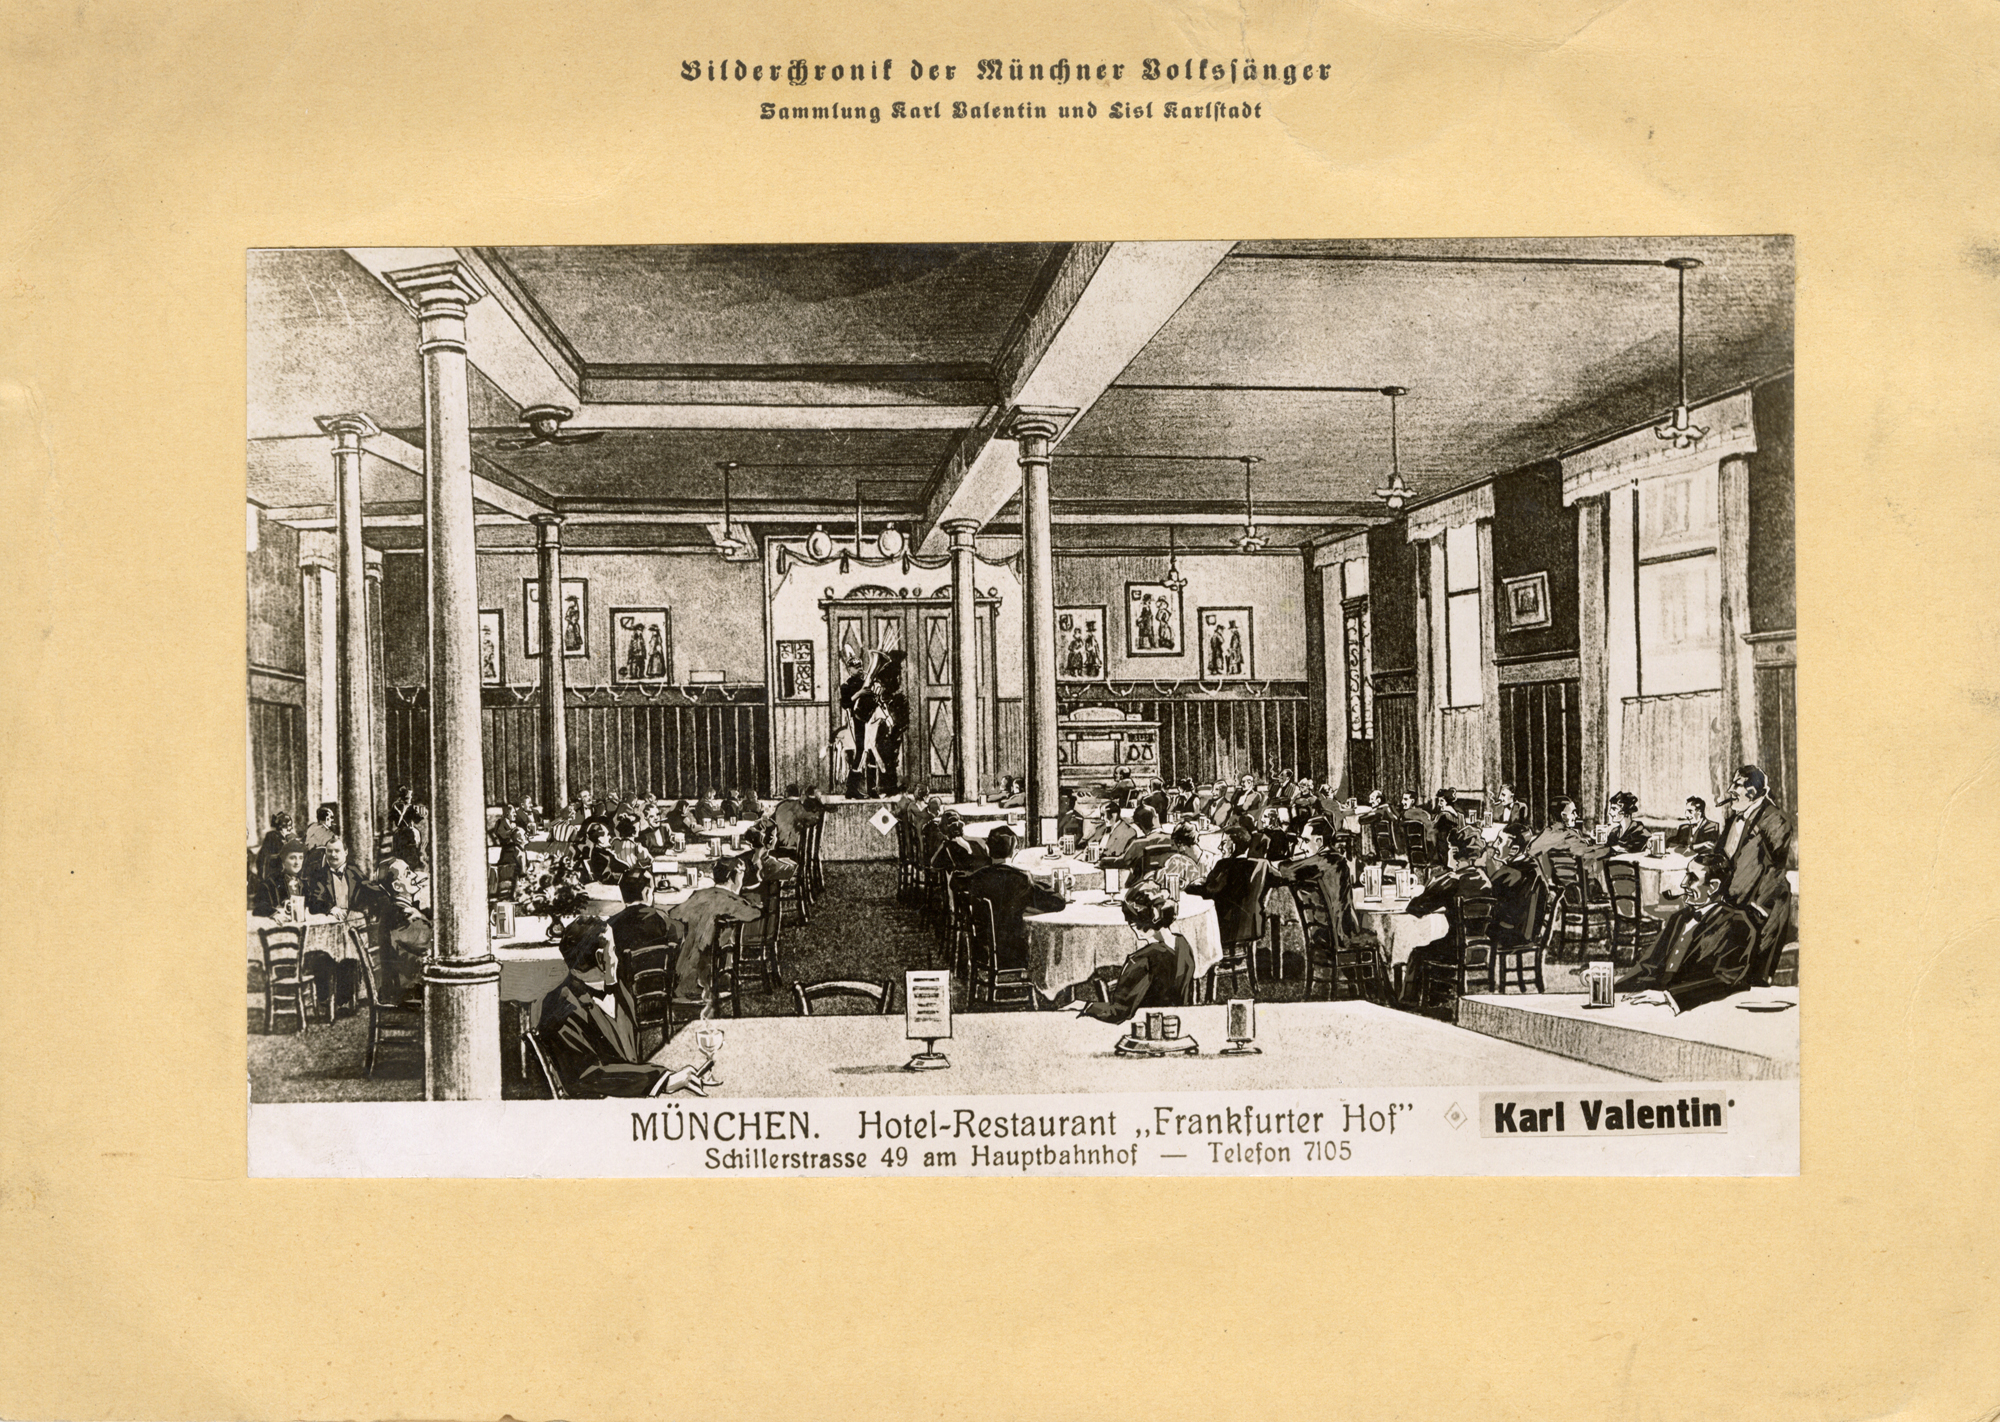 Karl Valentin in seiner Rolle als Schwerer Reiter im Frankfurter Hof, 1911